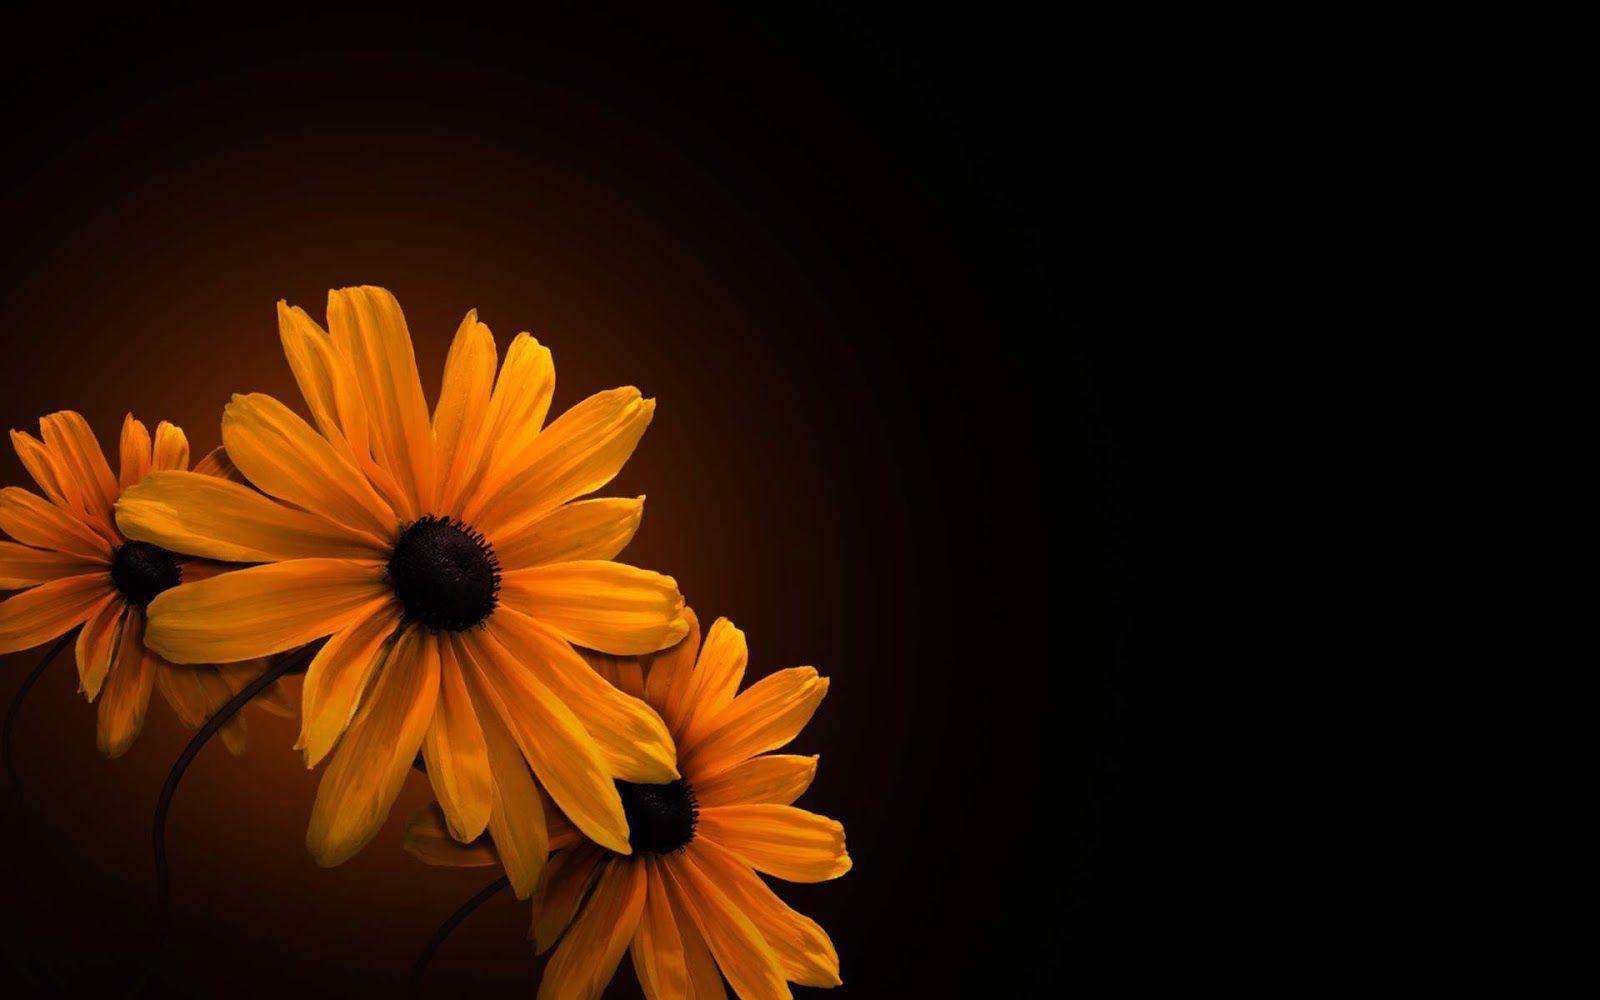 Dark Flowers Desktop Wallpapers - Top Free Dark Flowers Desktop